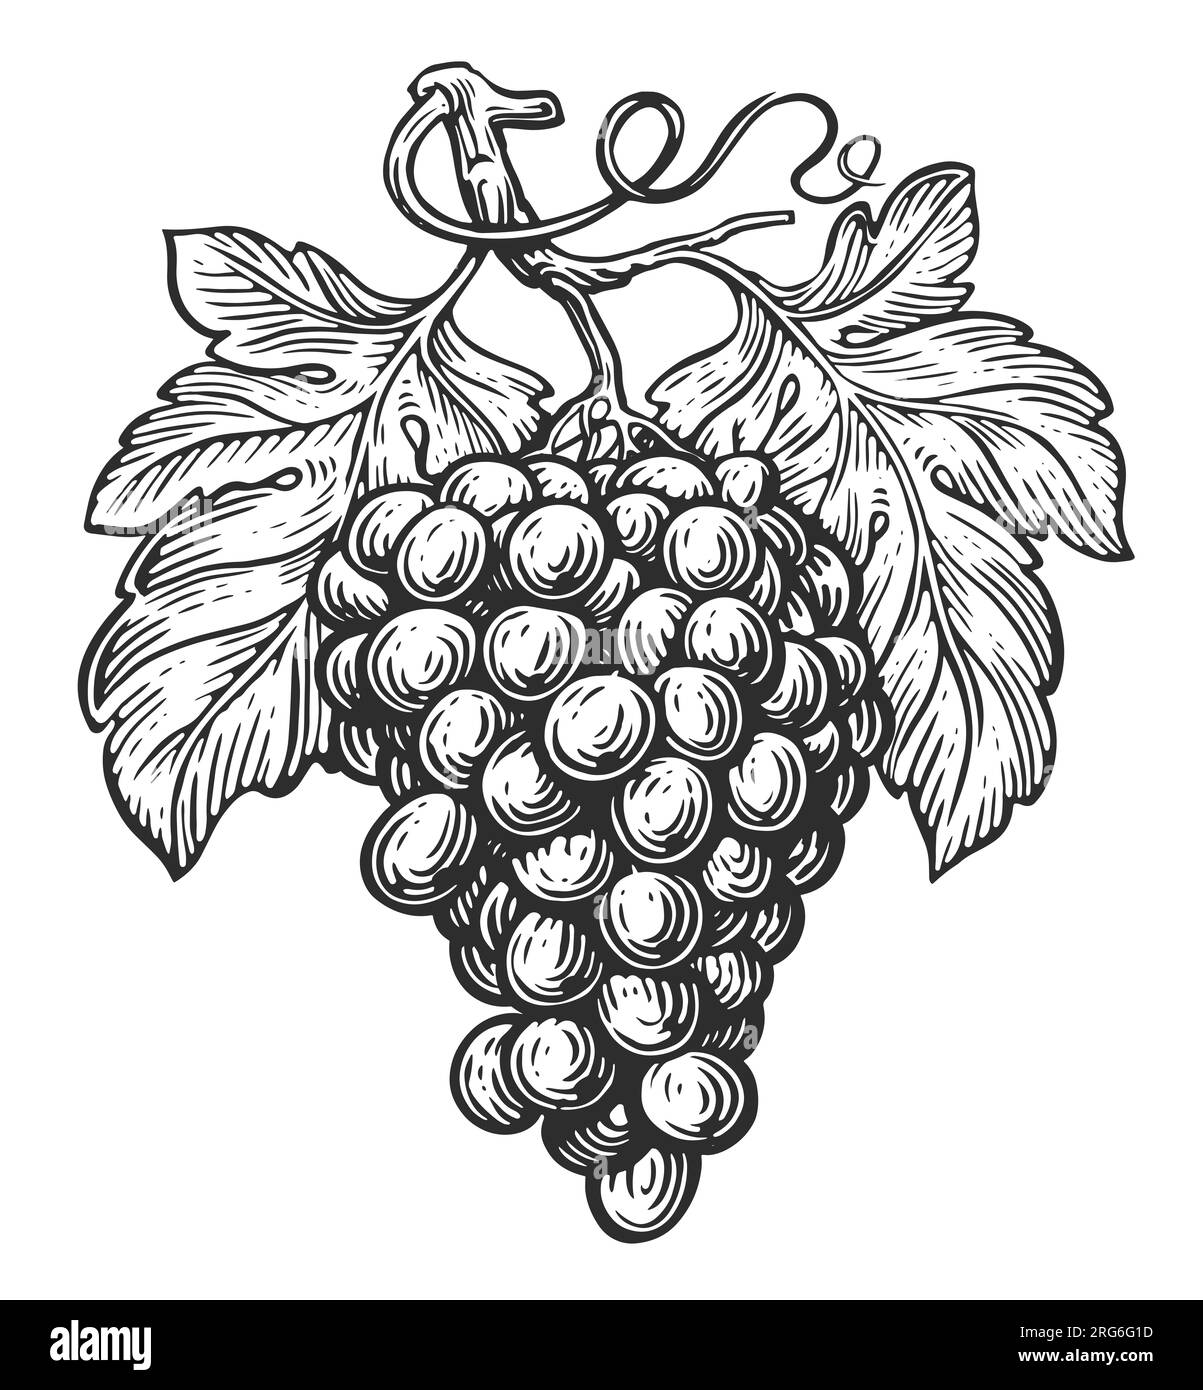 Croquis de vigne. Grappe de raisins avec des feuilles. Illustration vintage Banque D'Images